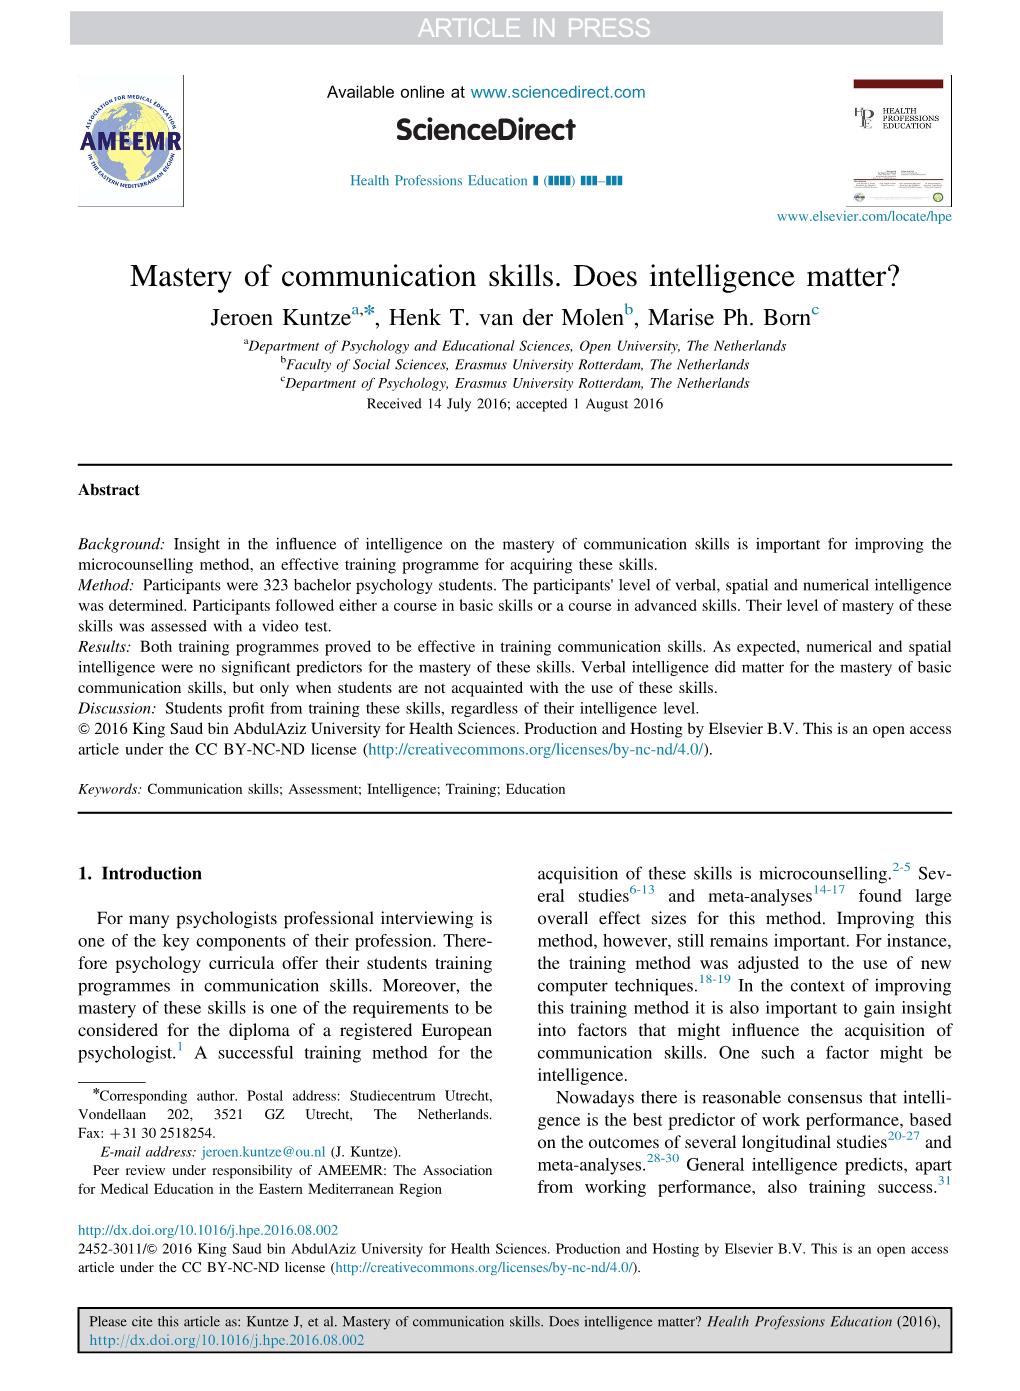 Mastery of Communication Skills. Does Intelligence Matter? Jeroen Kuntzea,N, Henk T